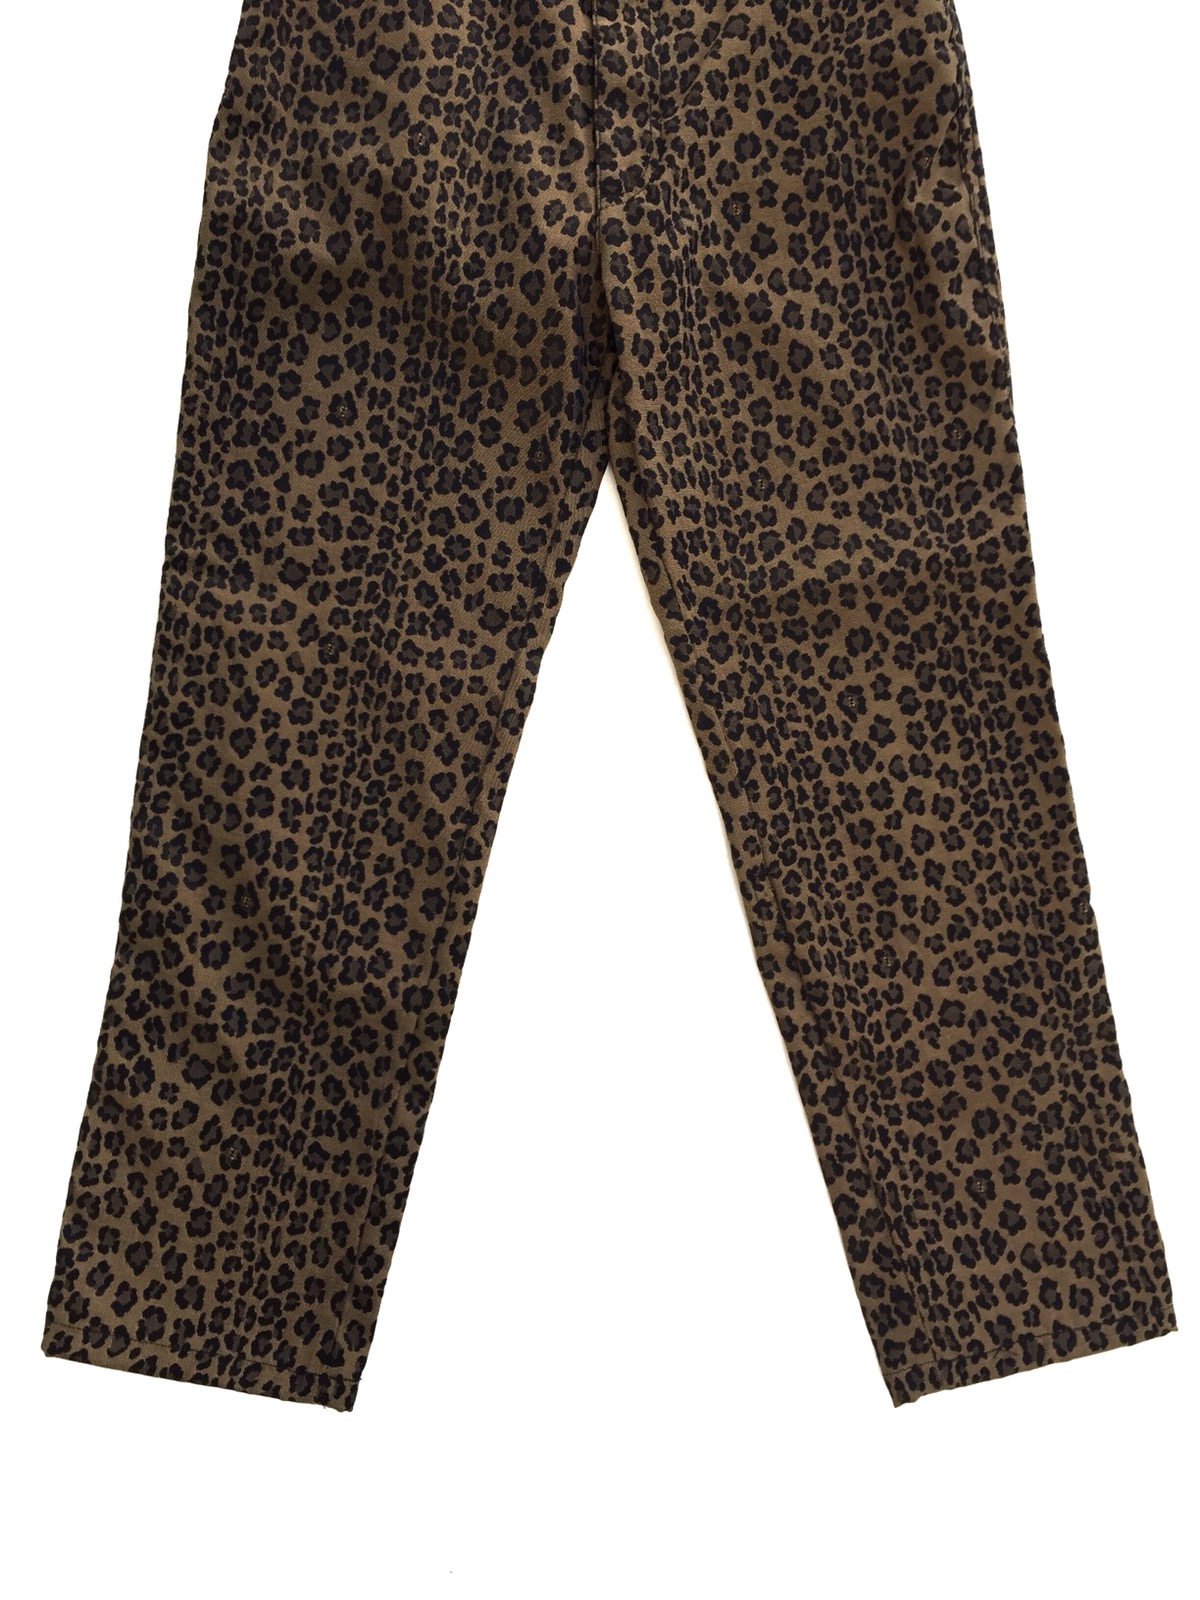 Vintage Authentic Fendi Leopard Pants - 6